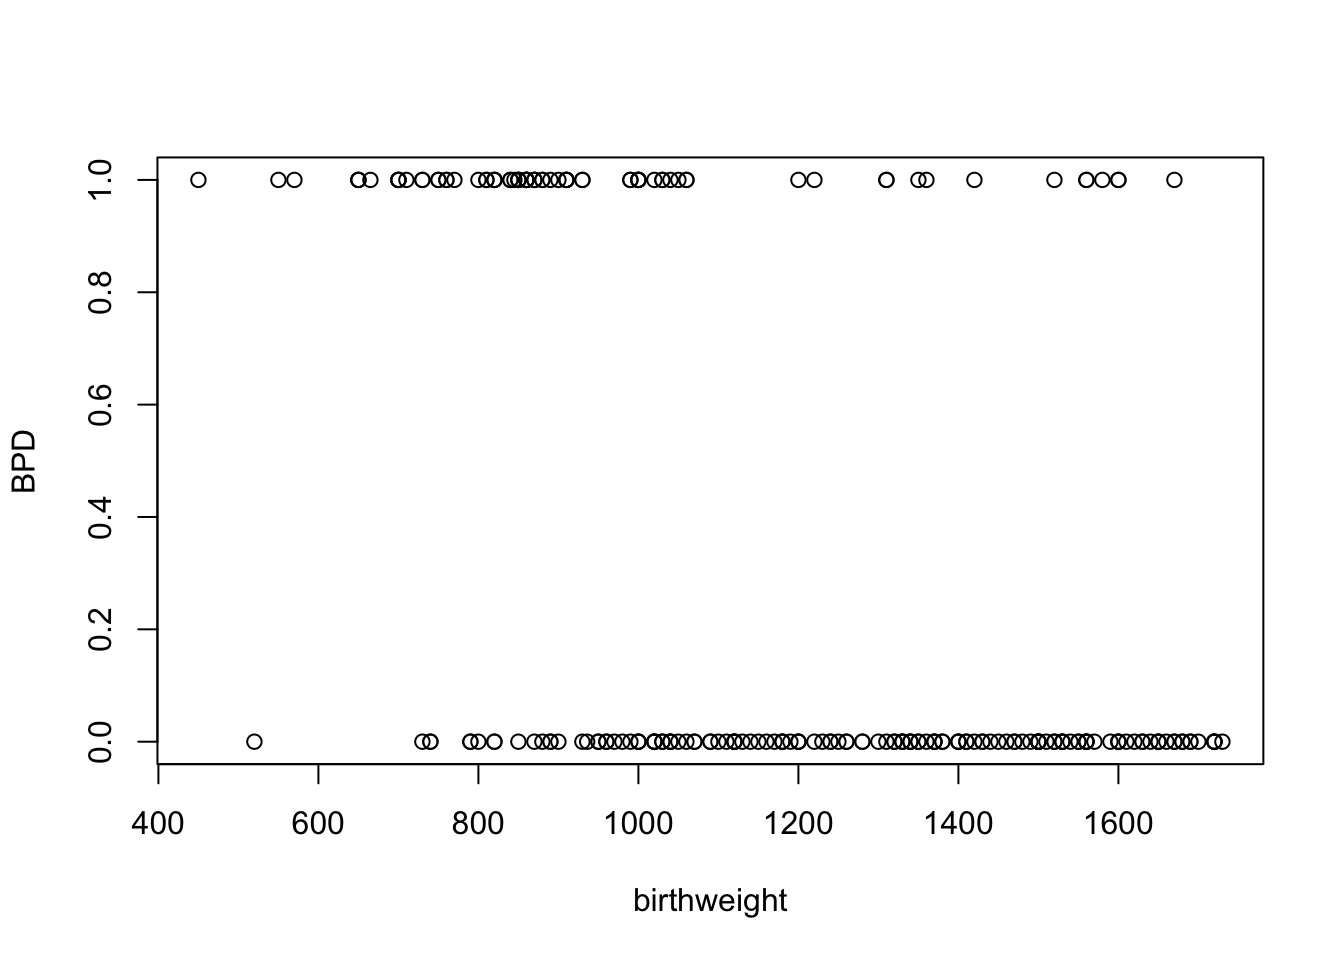 Plot of presence of BPD against birthweight for the `bpd` dataset.